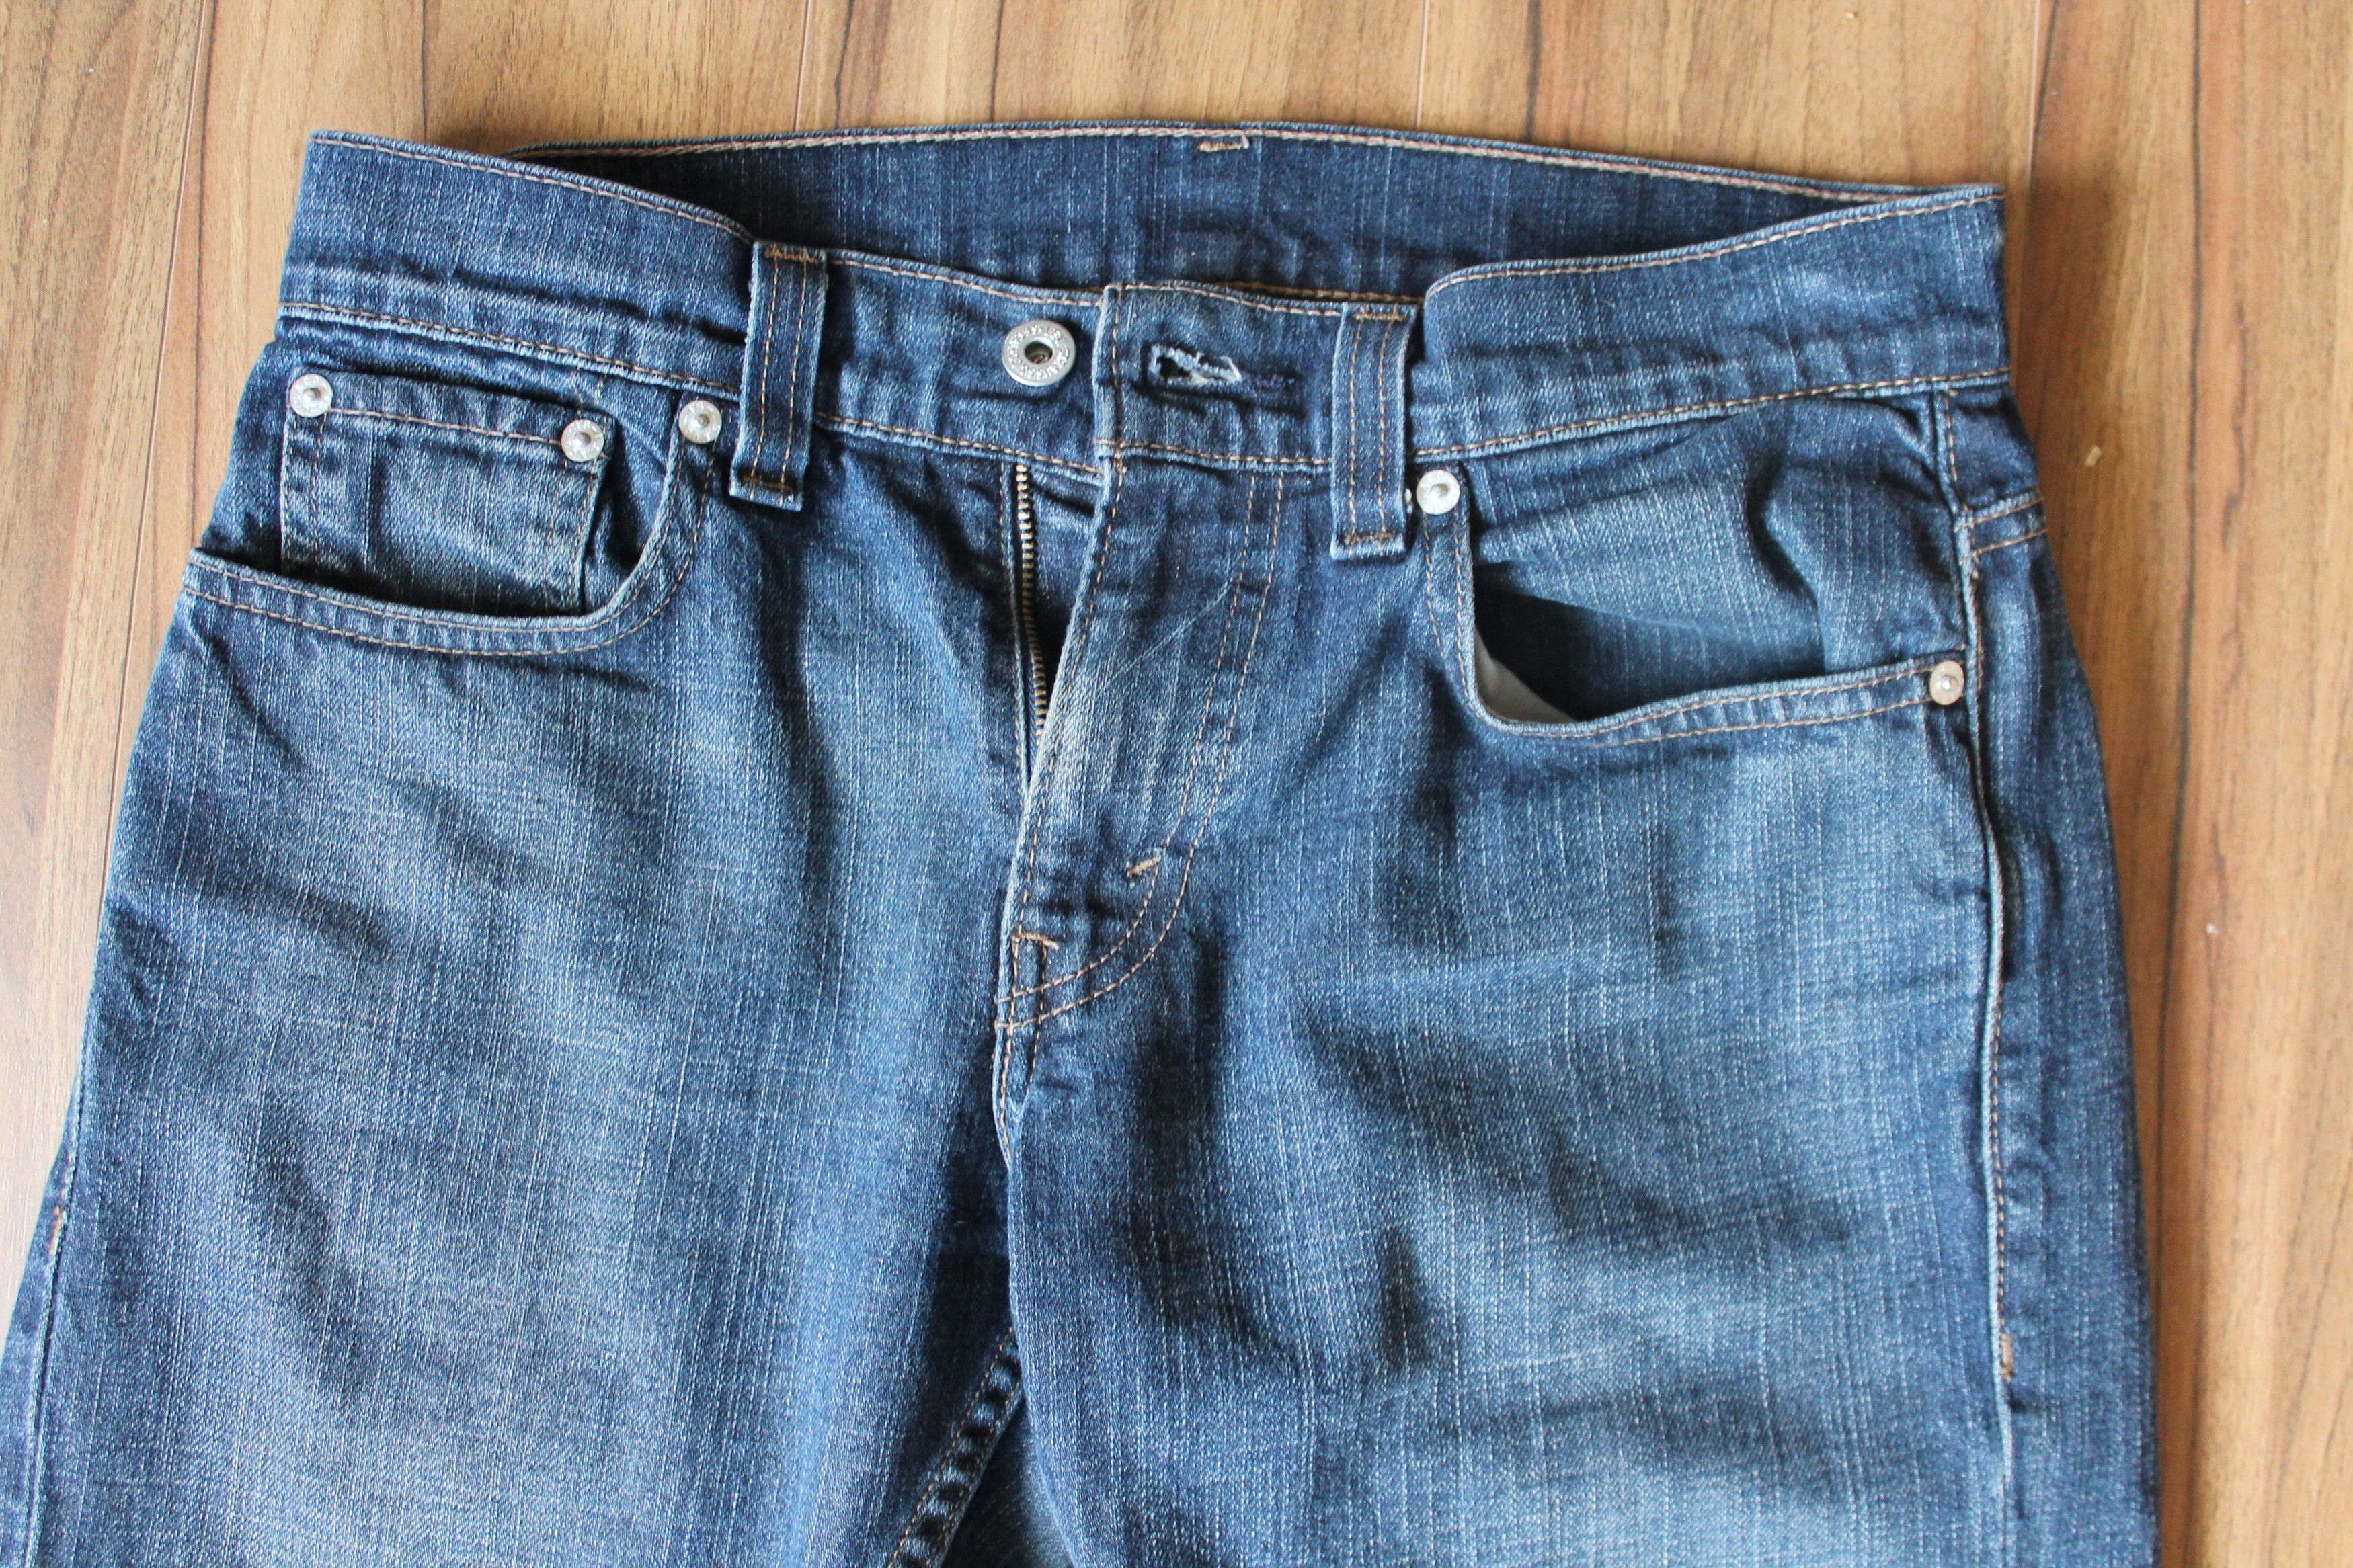 Levi's Navy Blue Levi's 511 Selvedge Denim Jeans (29x30) Size US 29 - 2 Preview